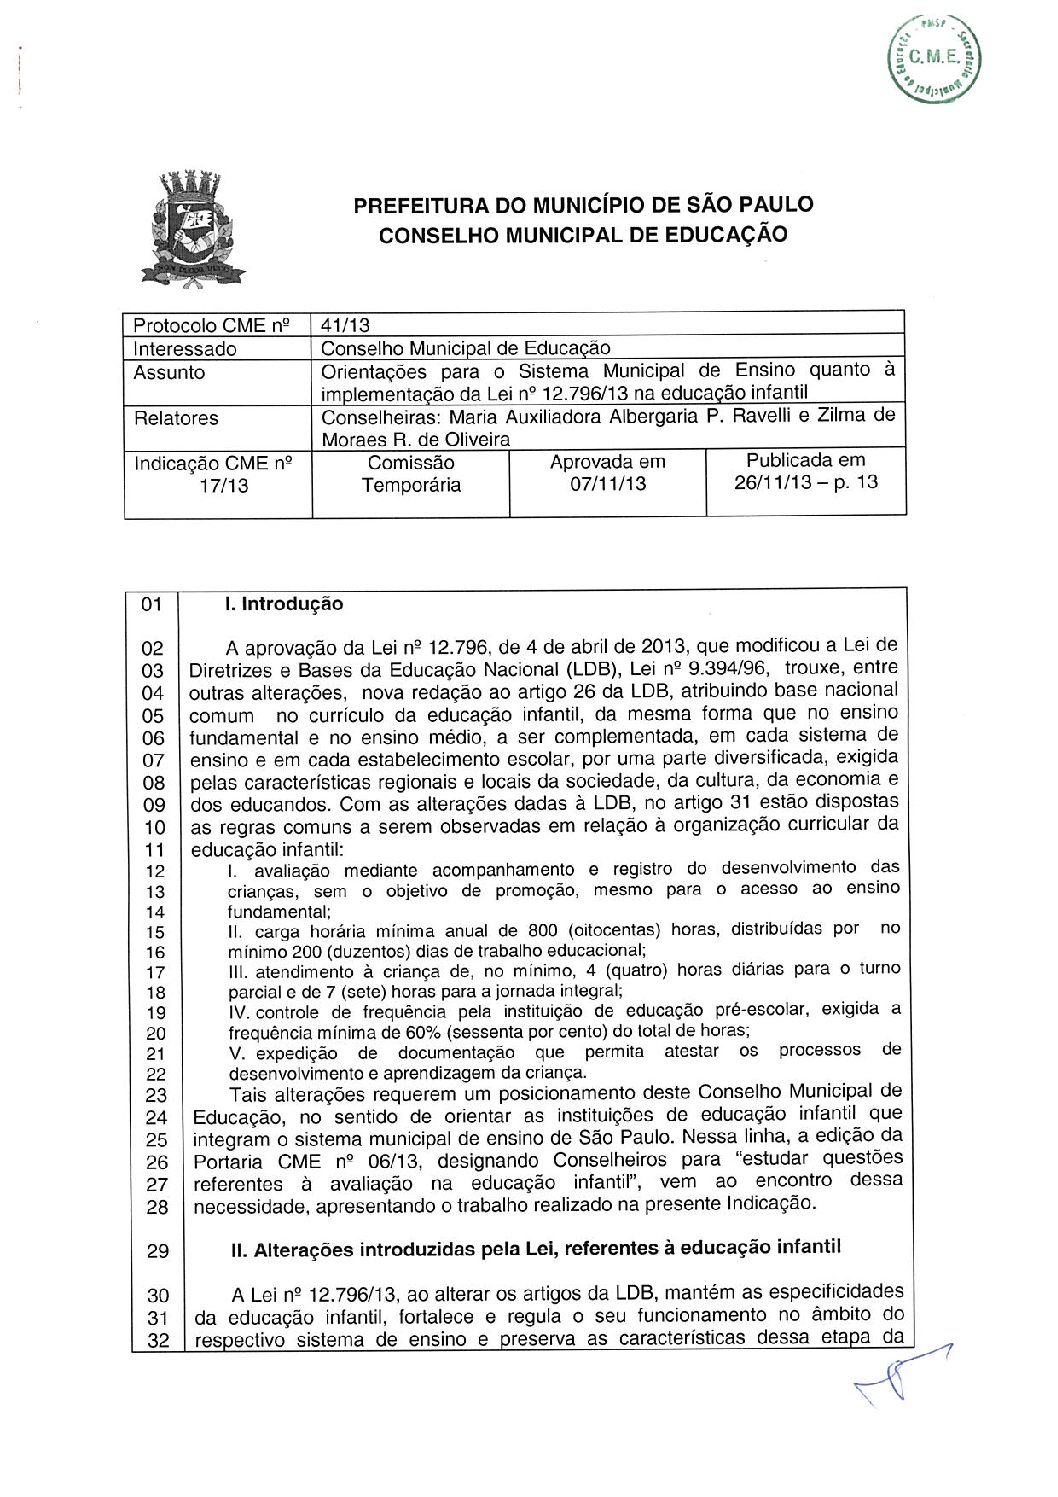 Indicação CME nº 17/2013 - Orientações para o Sistema Municipal de Ensino quanto à implementação da Lei nº 12.796/2013 na Educação Infantil